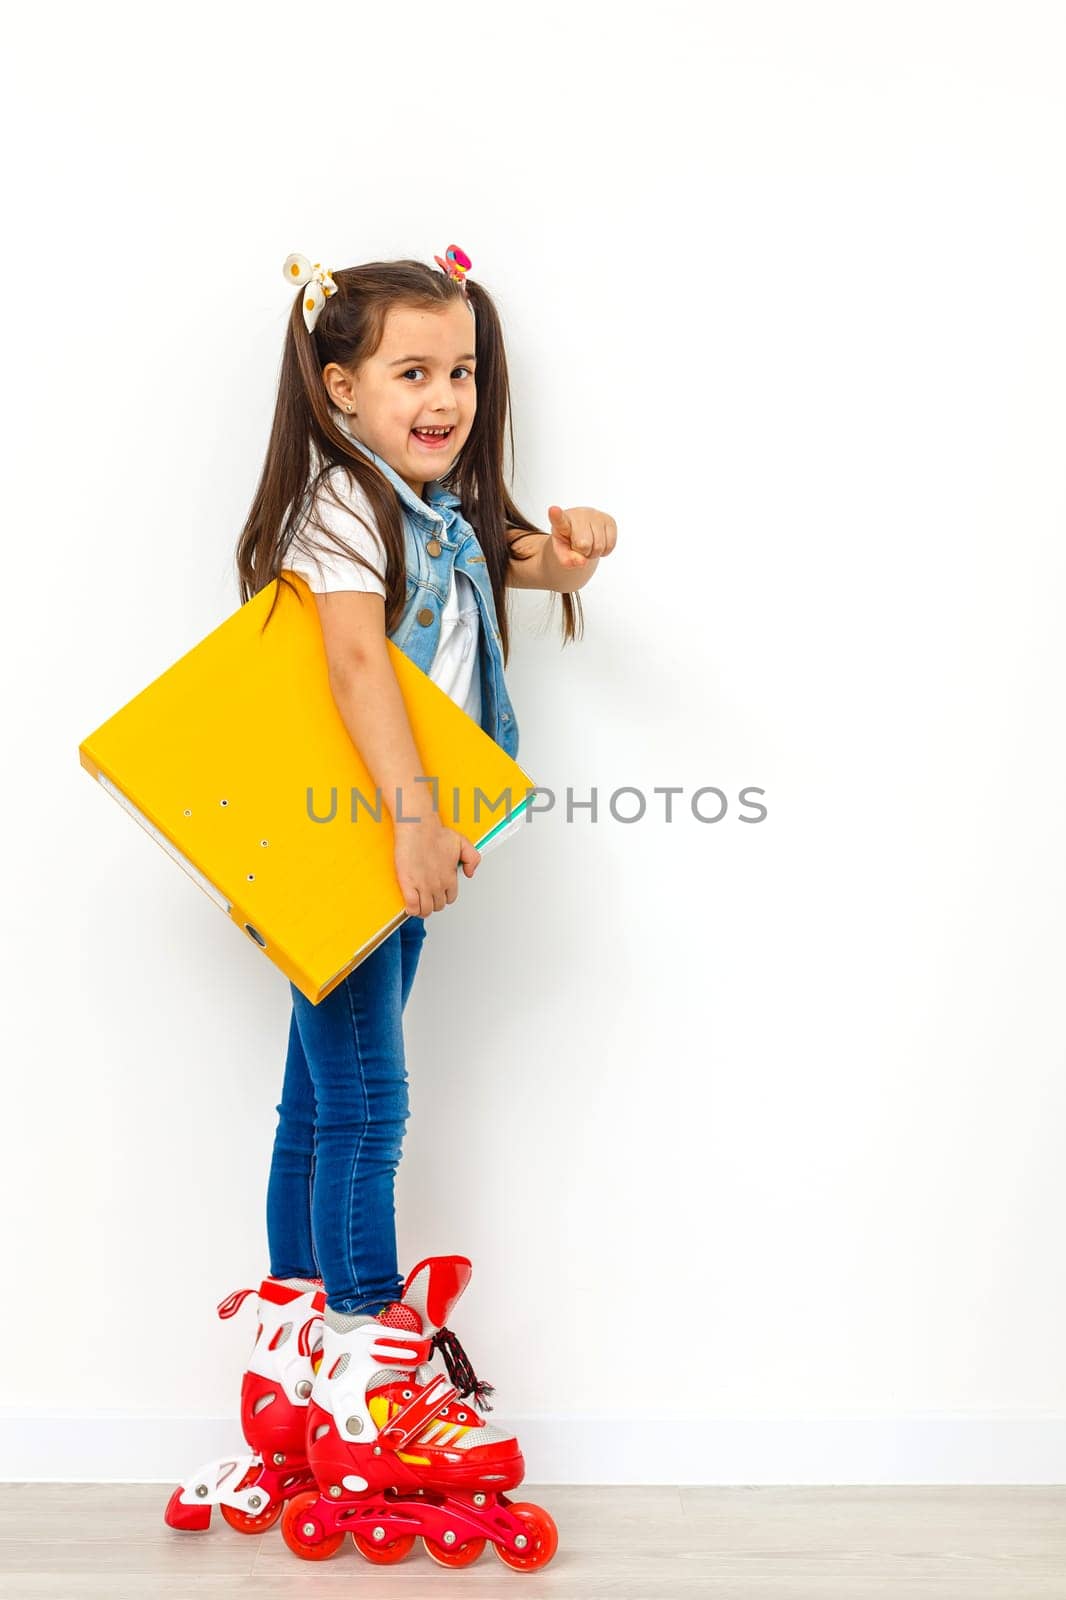 Cute girl on roller skates against white background by Andelov13